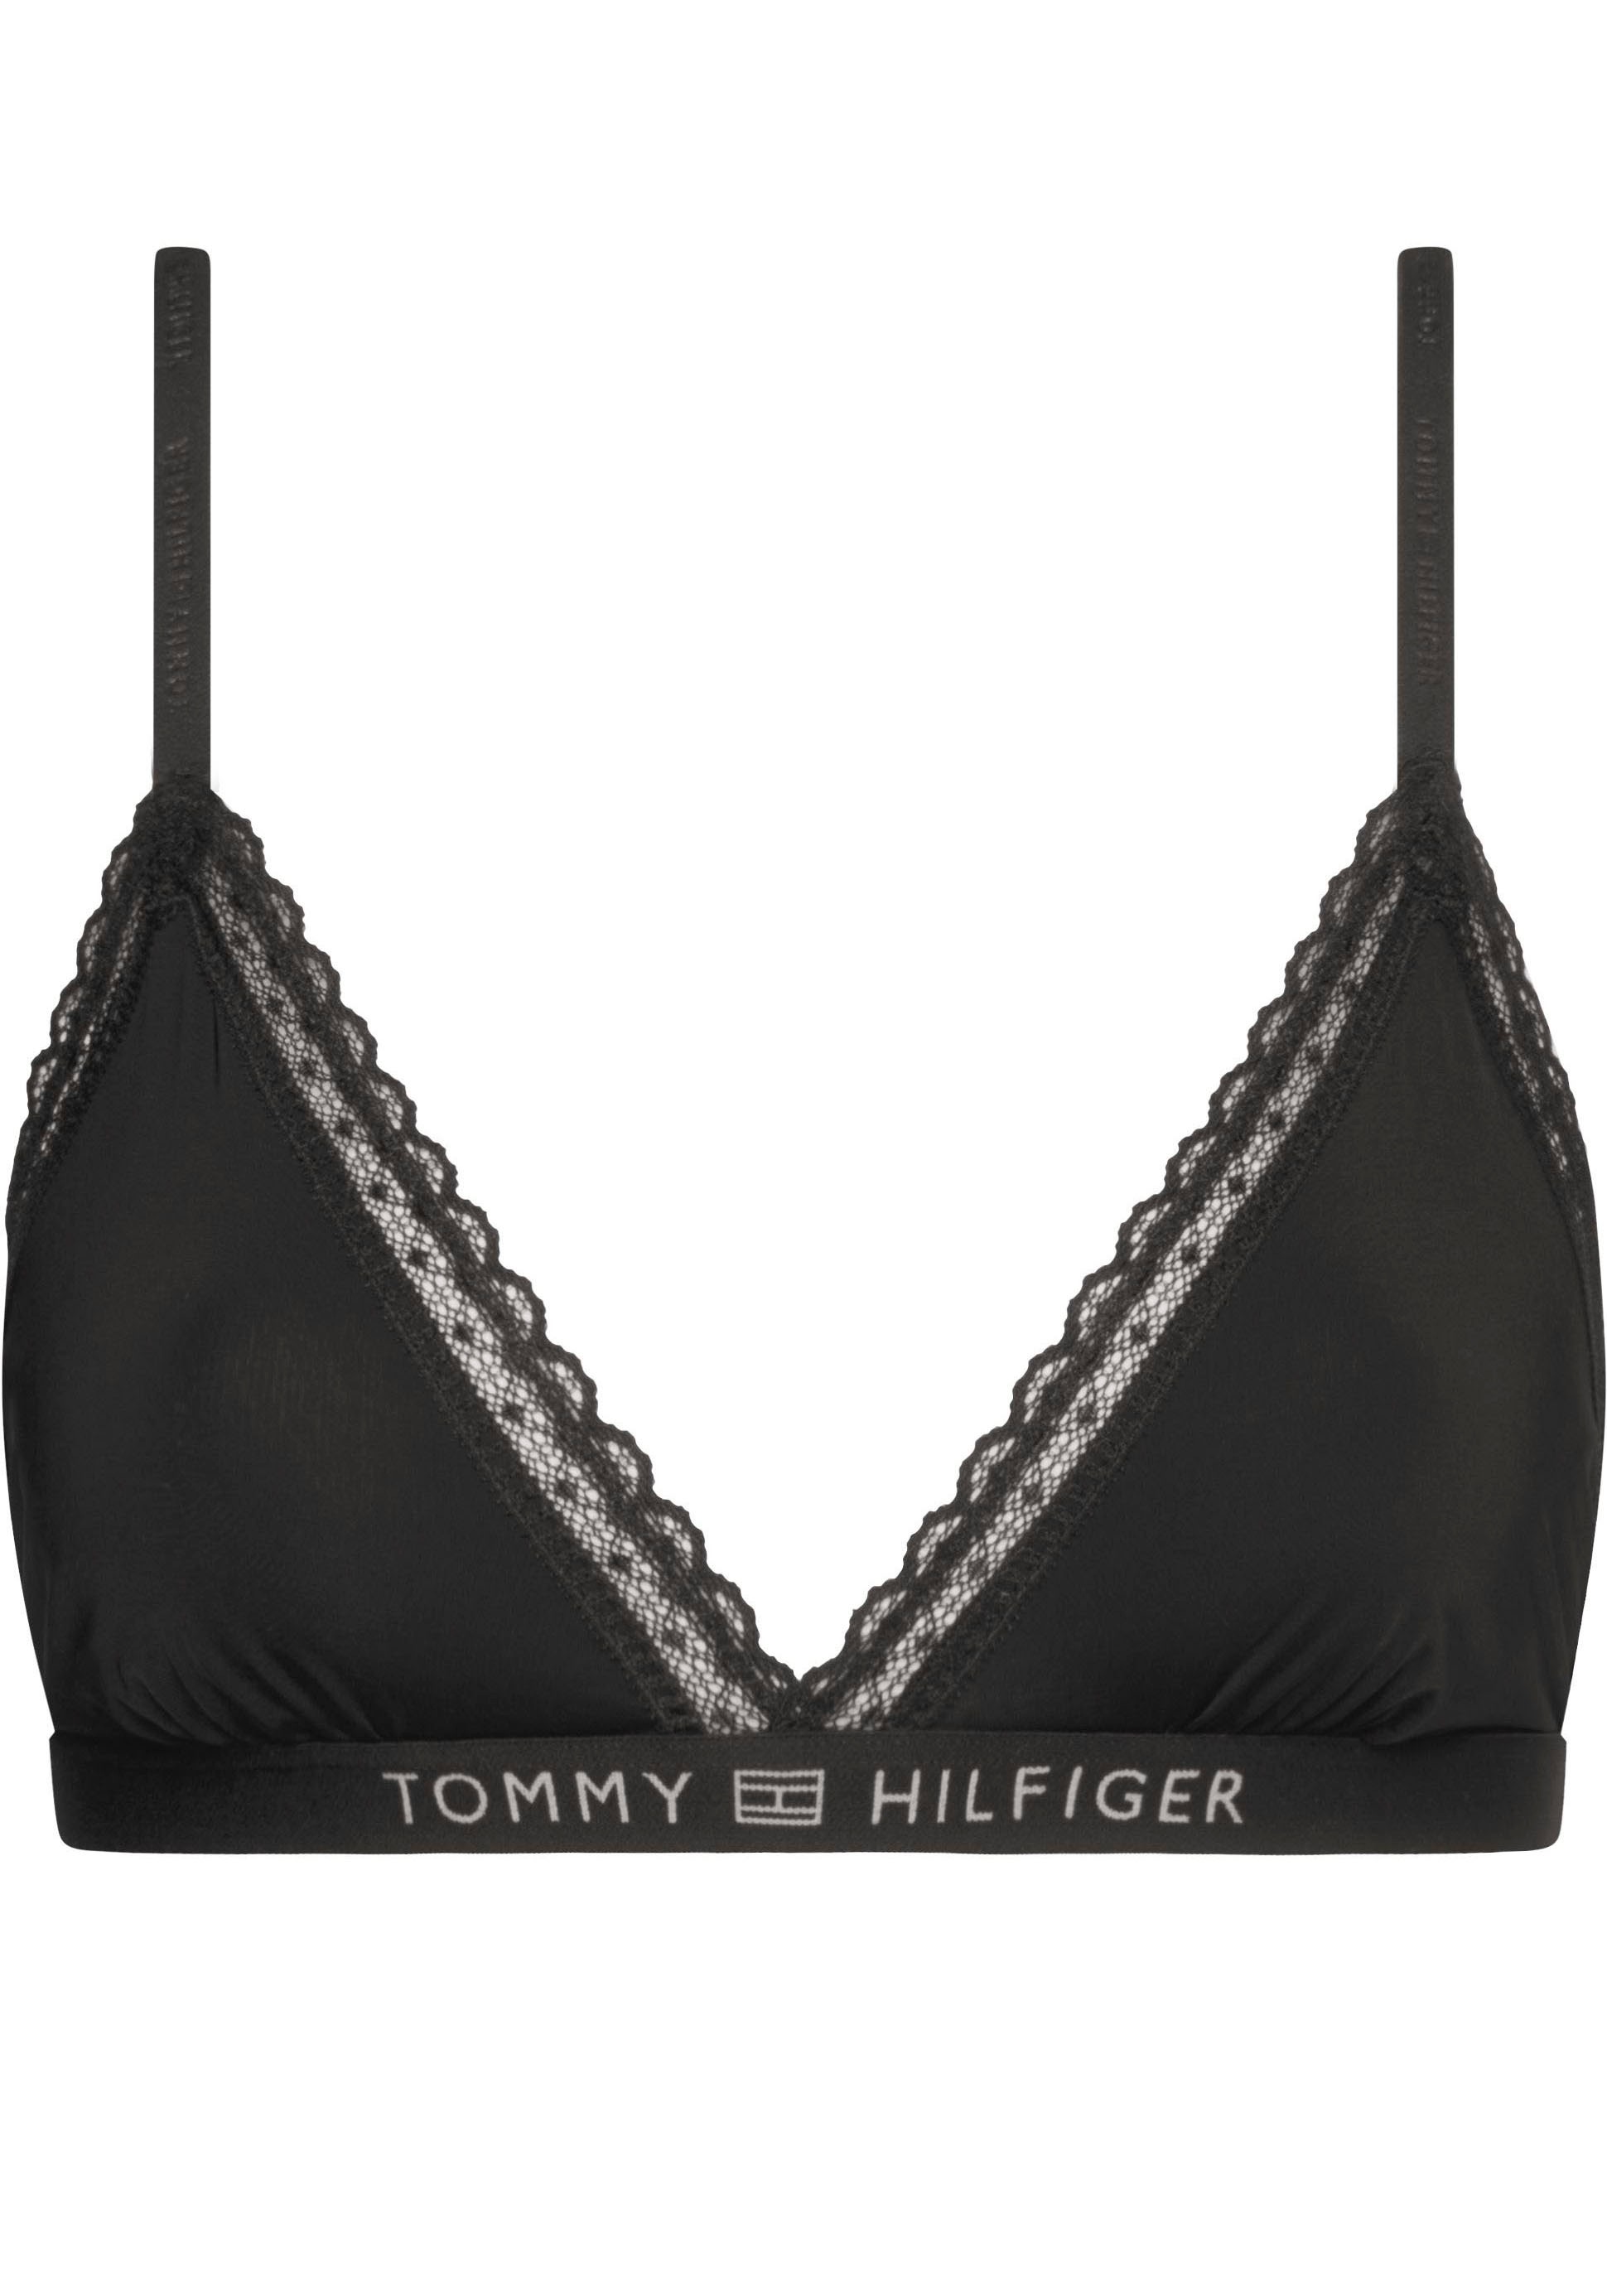 »UNLINED Tommy Hilfiger mit Triangel-BH Tommy Markenlabel Hilfiger TRIANGLE« Underwear